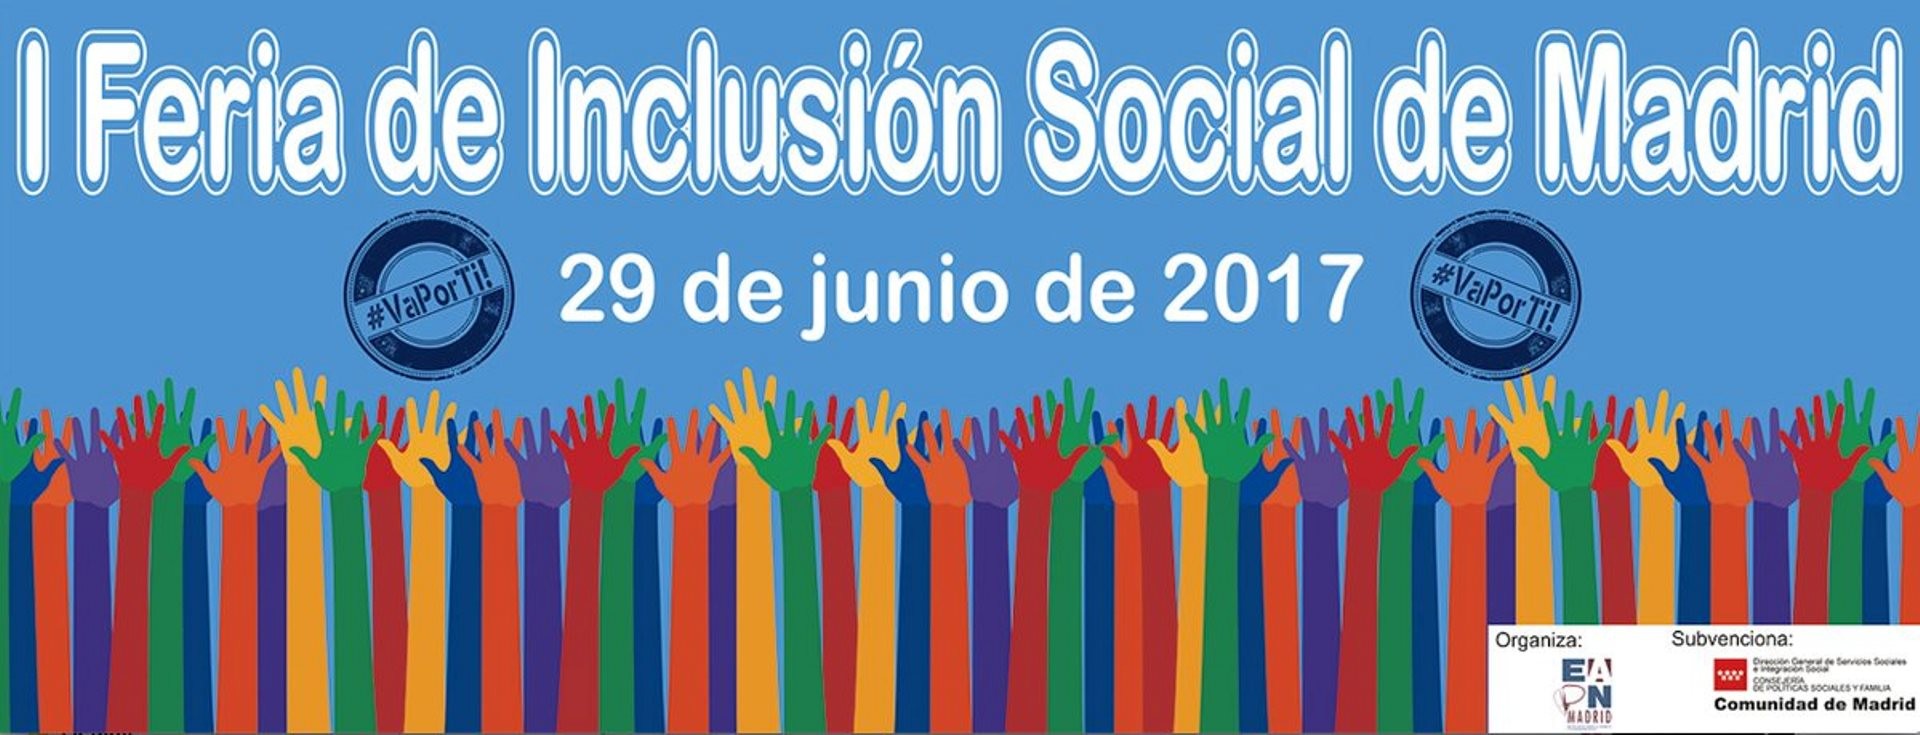 La Asociación Progestión participa de forma activa en la Primera Feria de Inclusión Social de Madrid